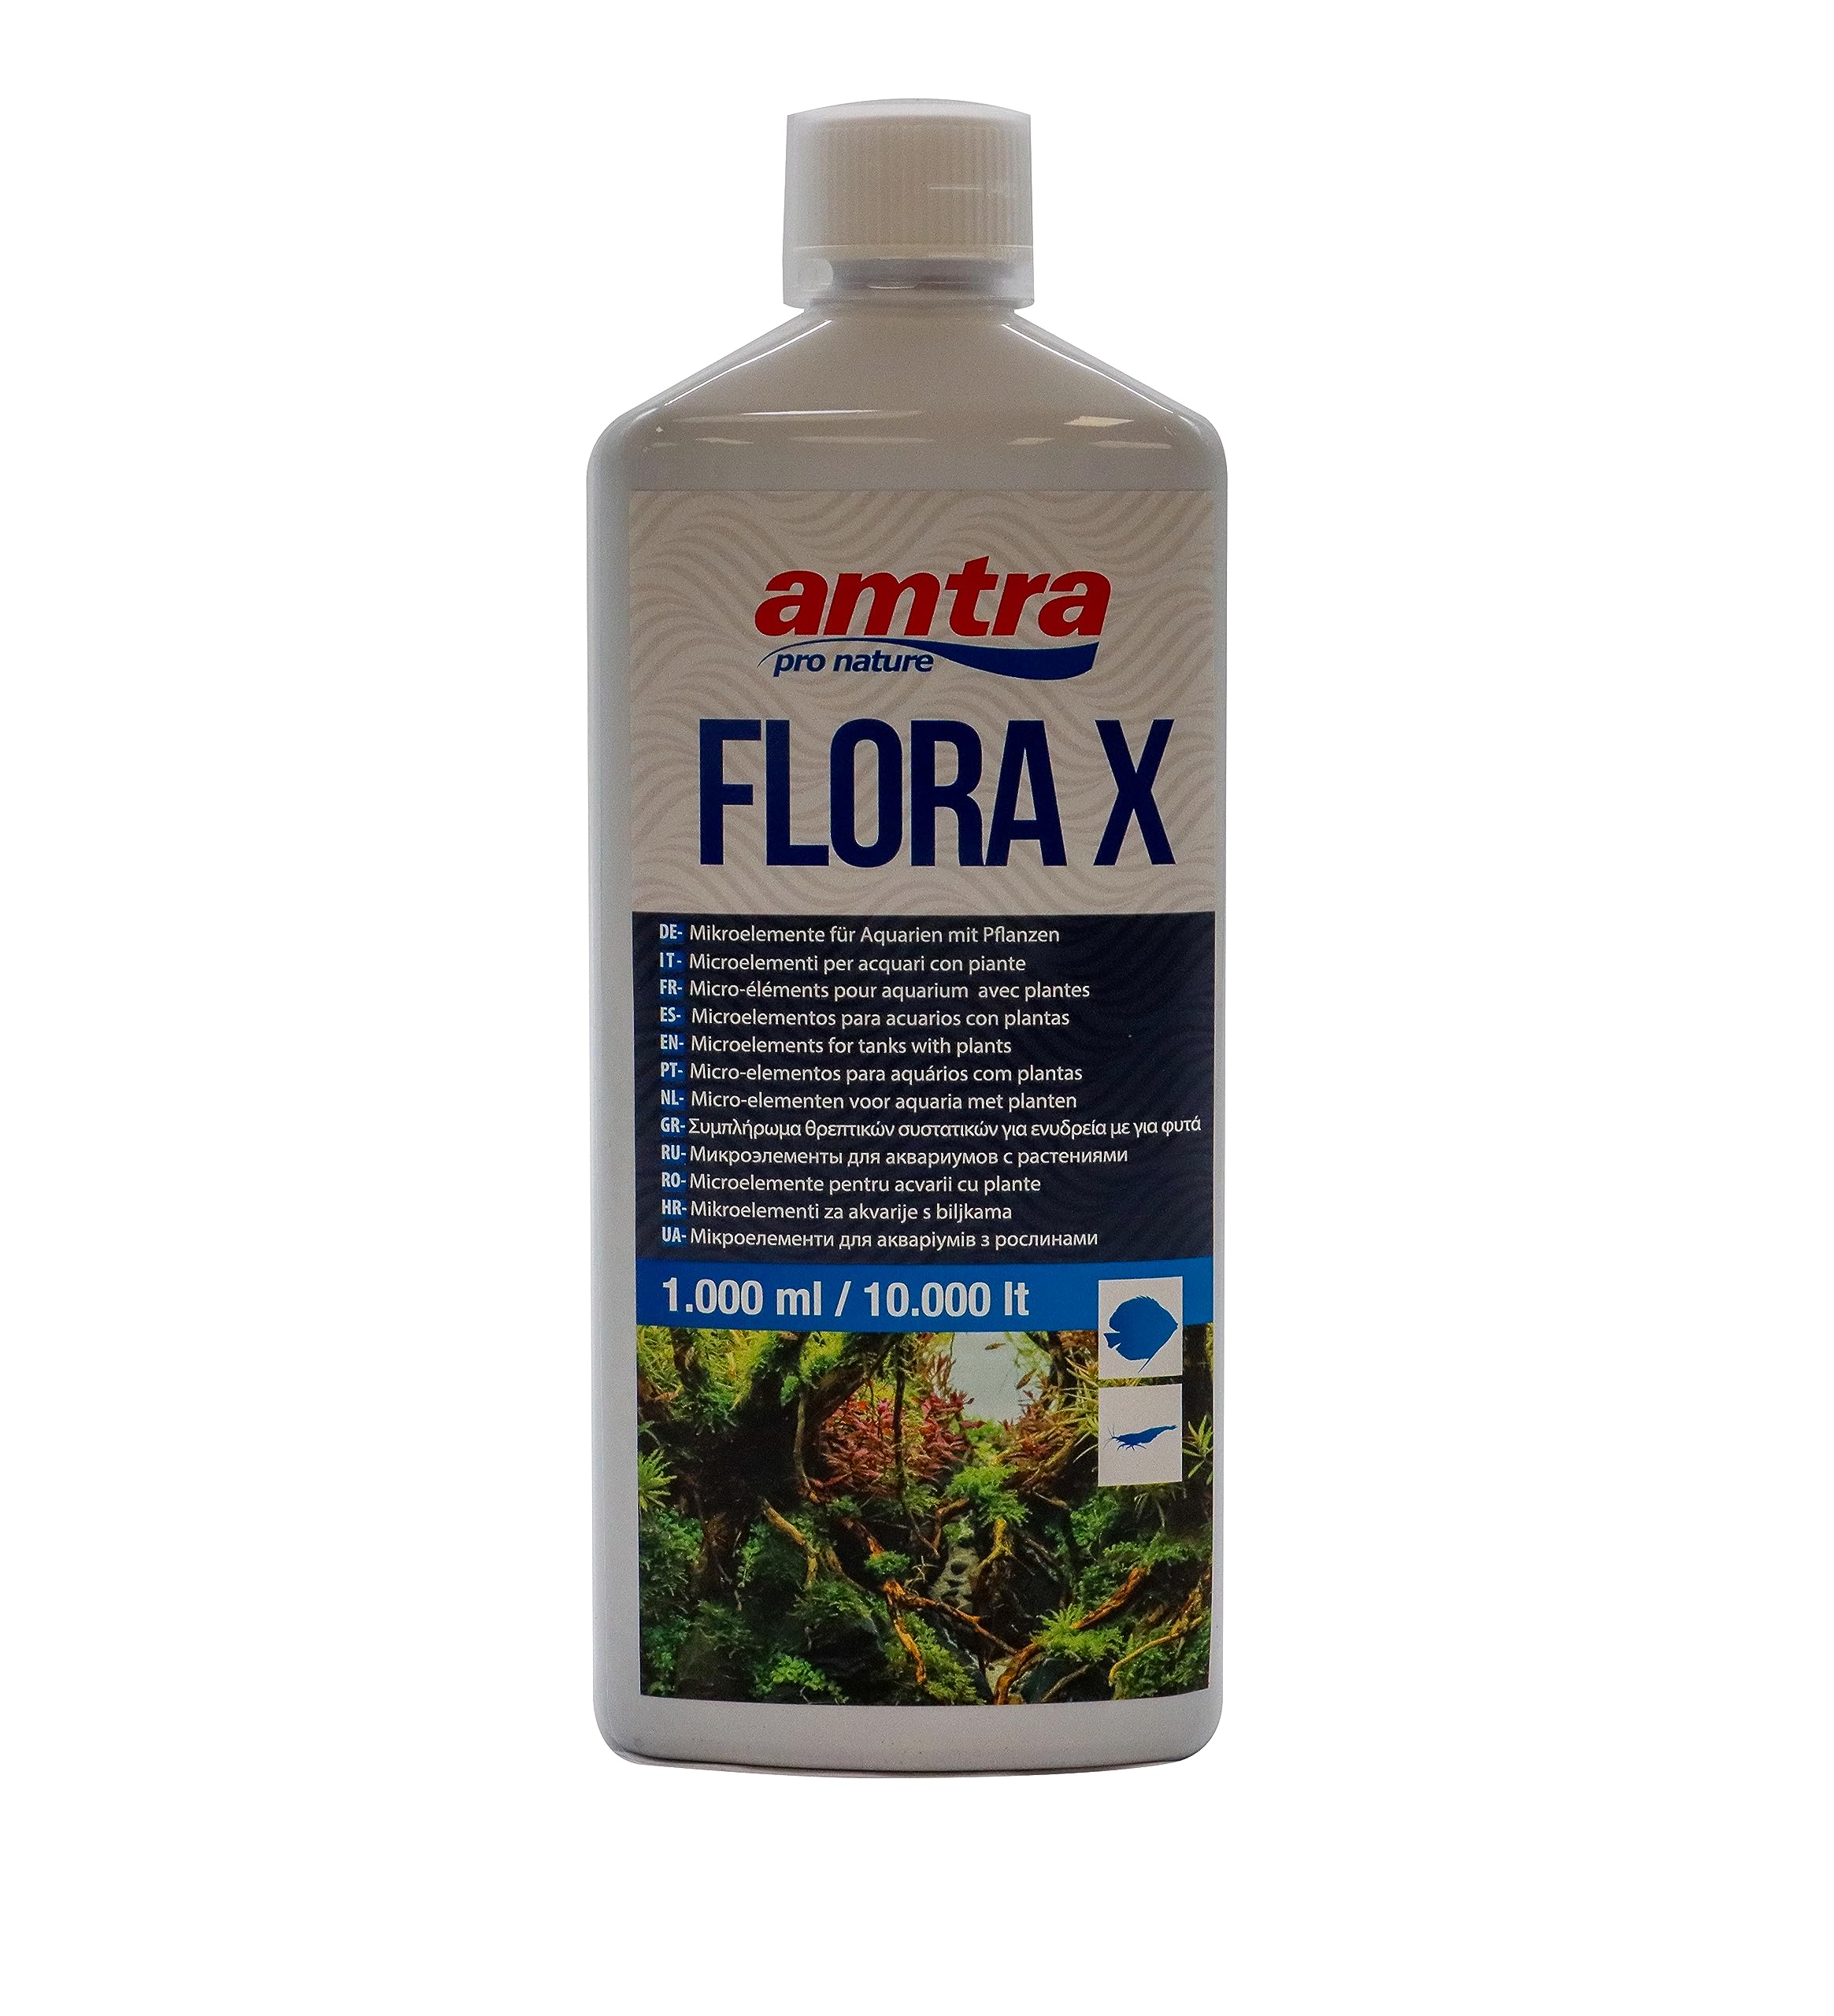 Amtra Flora X - Eisen- und Spurenelementzusatz für Aquarien, Dünger für Aquarienpflanzen, für Süßwasser, 1000 ml